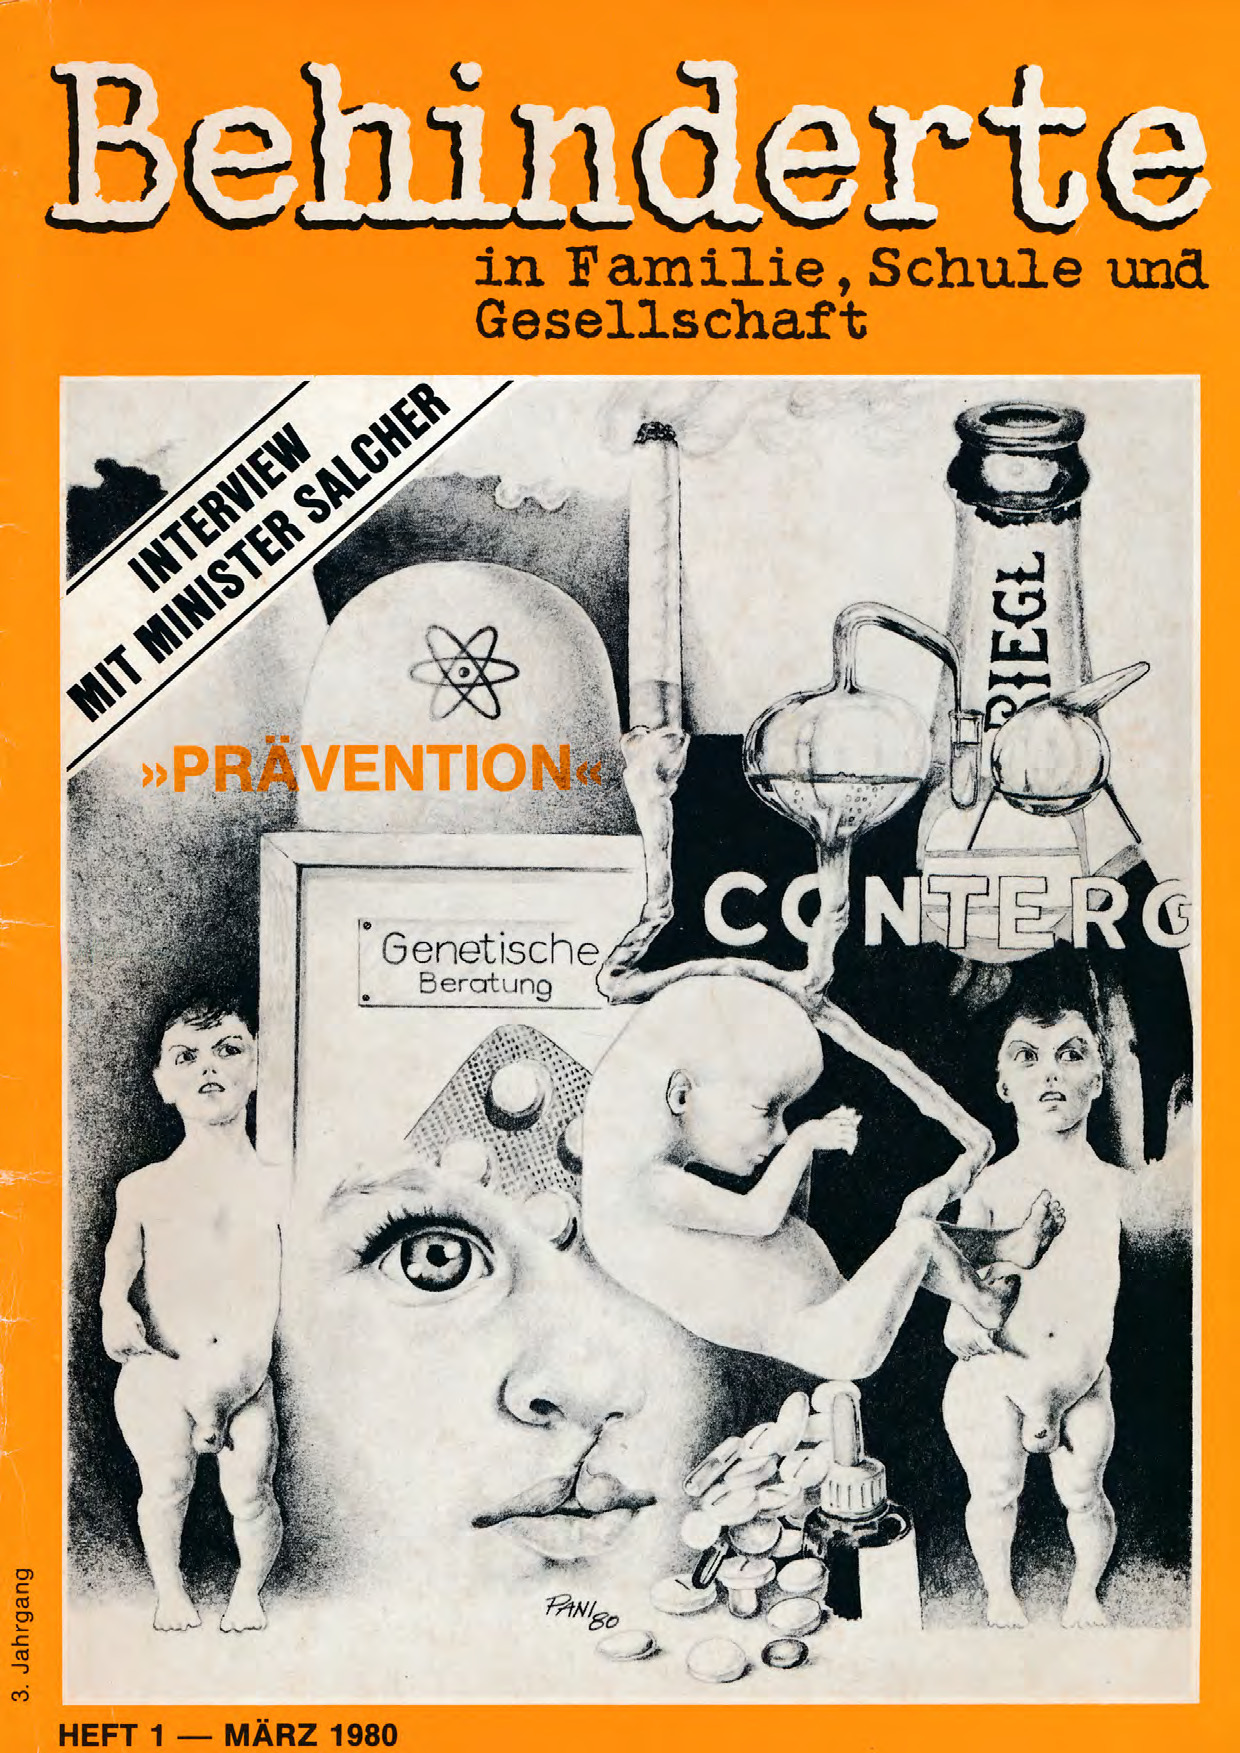 Titelbild der Zeitschrift BEHINDERTE MENSCHEN, Ausgabe 1/1980 "Prävention"